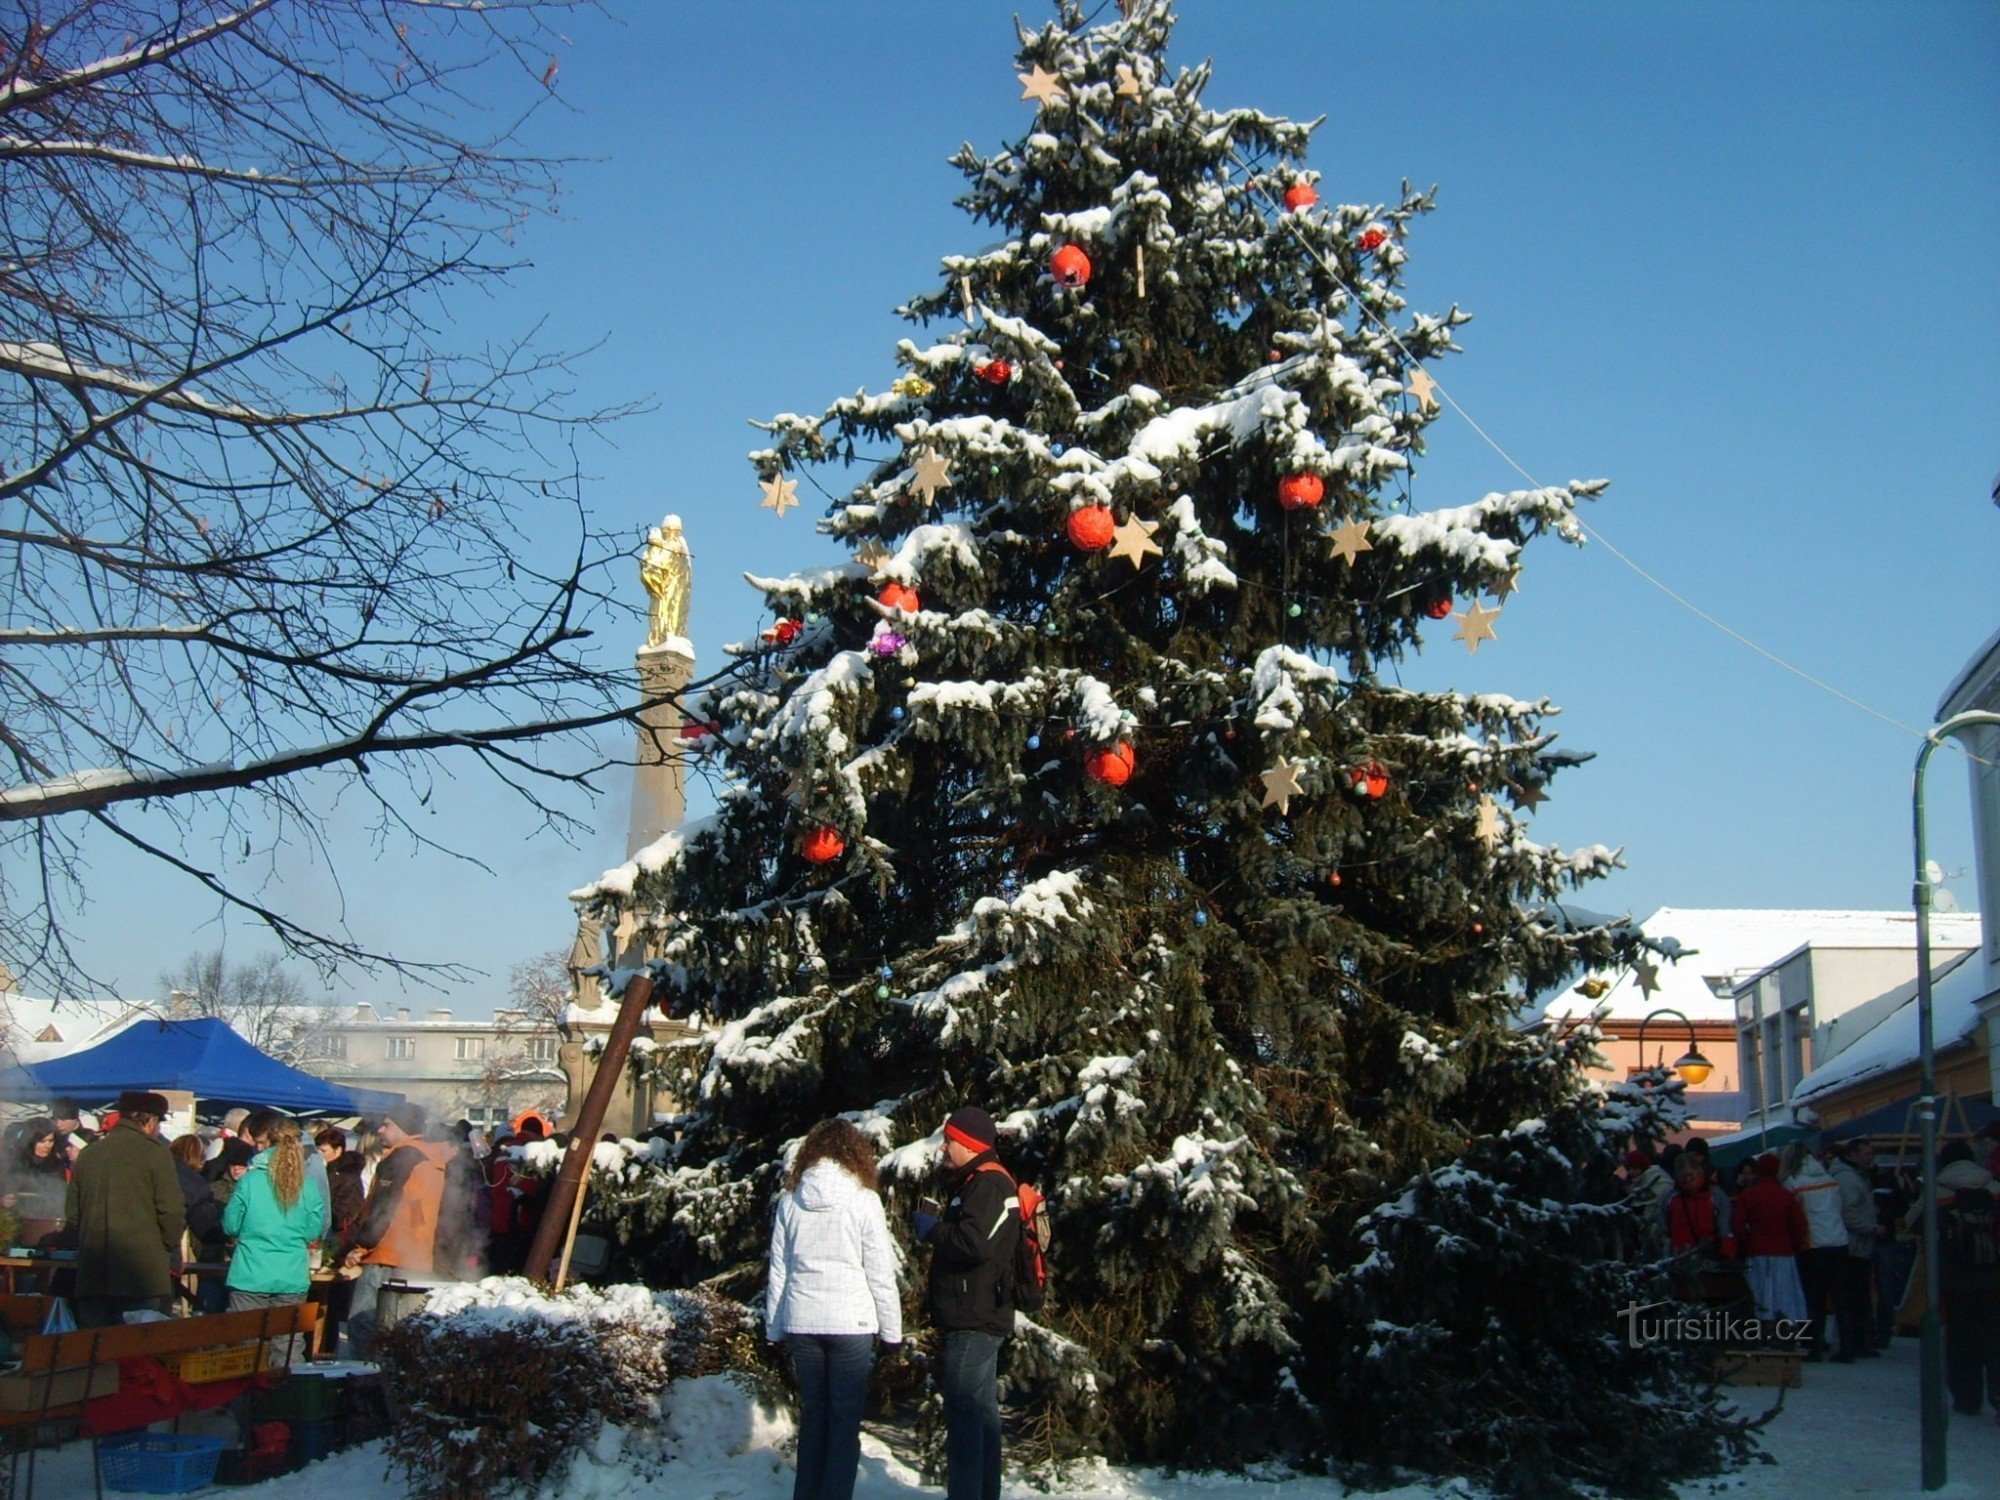 juletræ